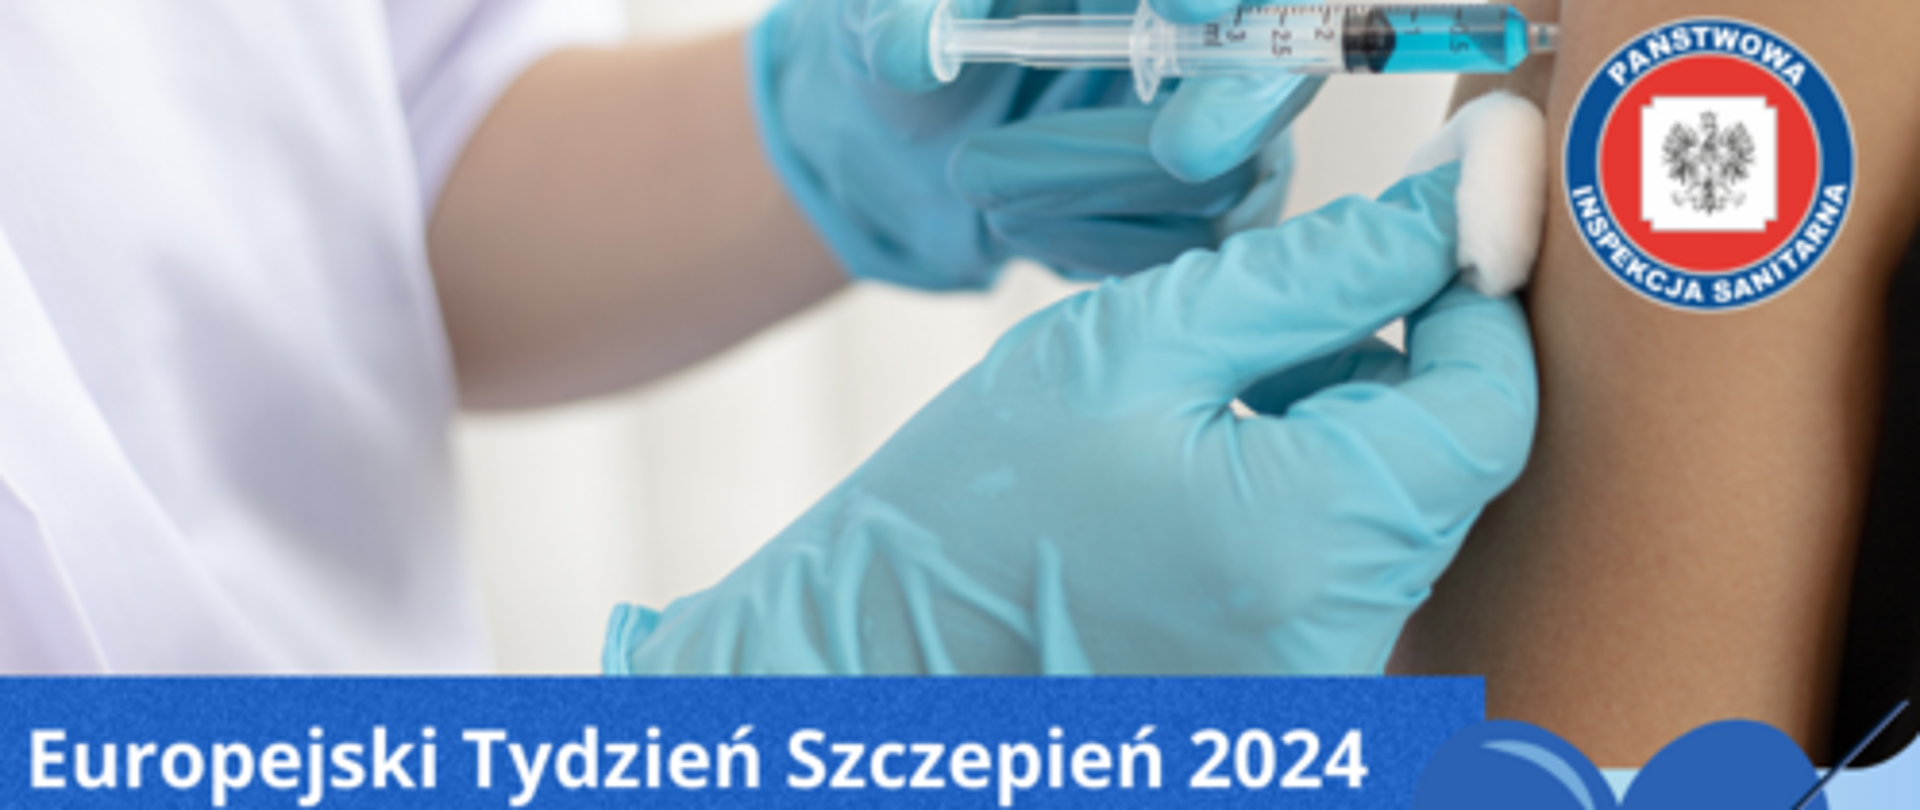 europejski tydzień szczepień 2024